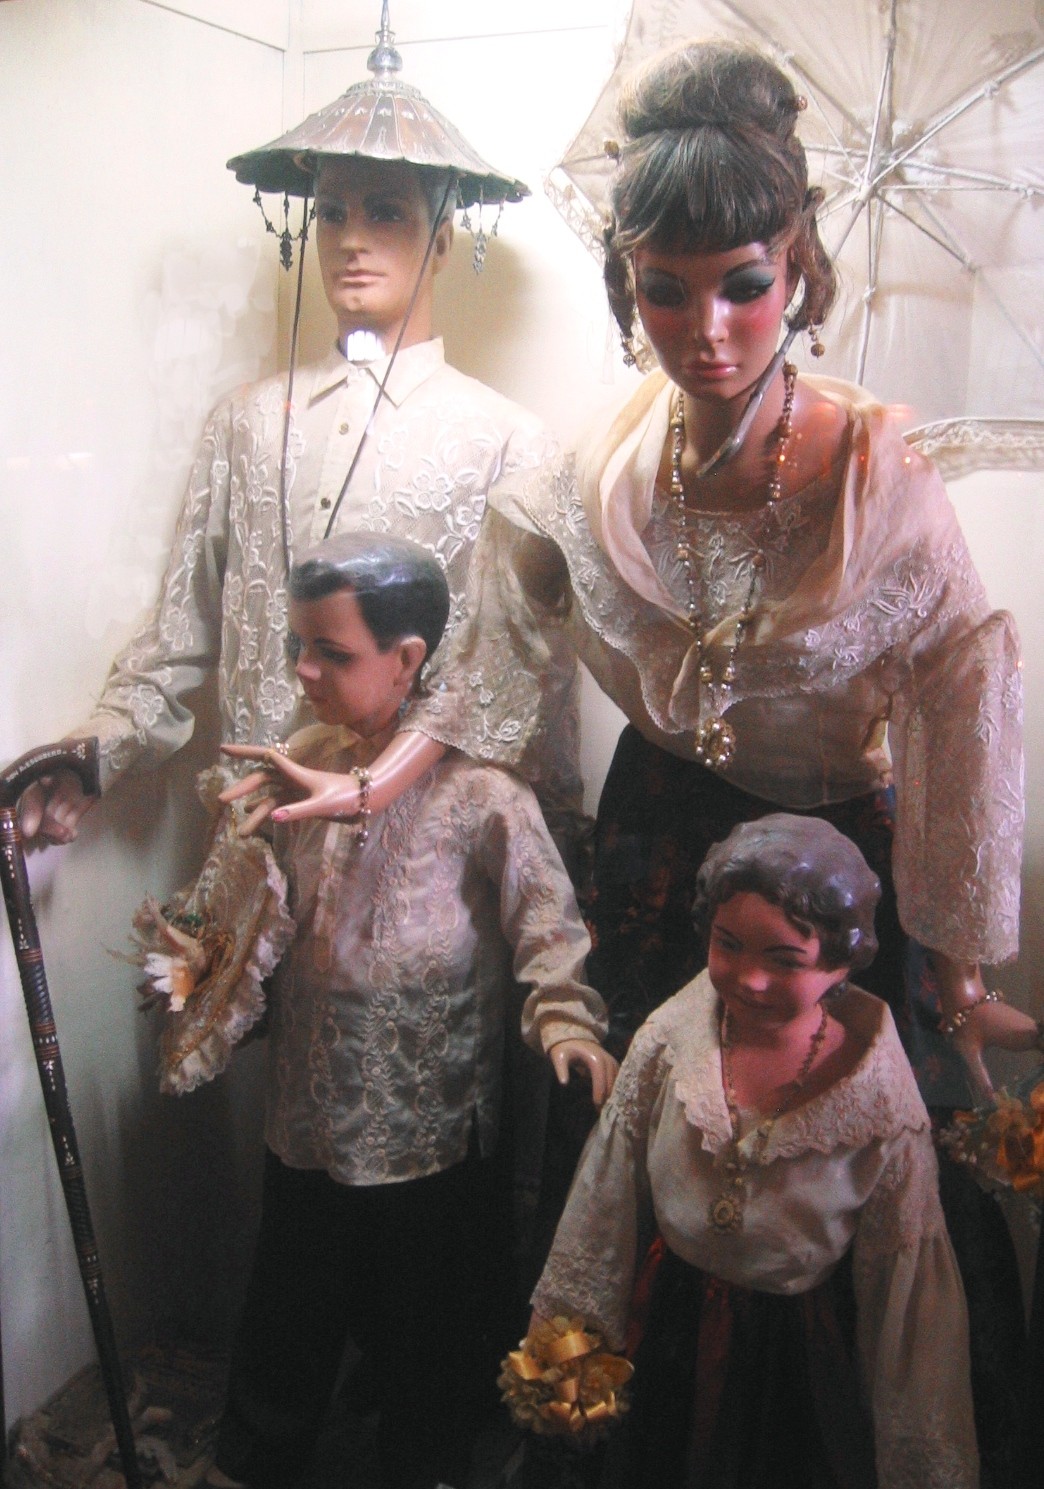 Traditional Filipino dress